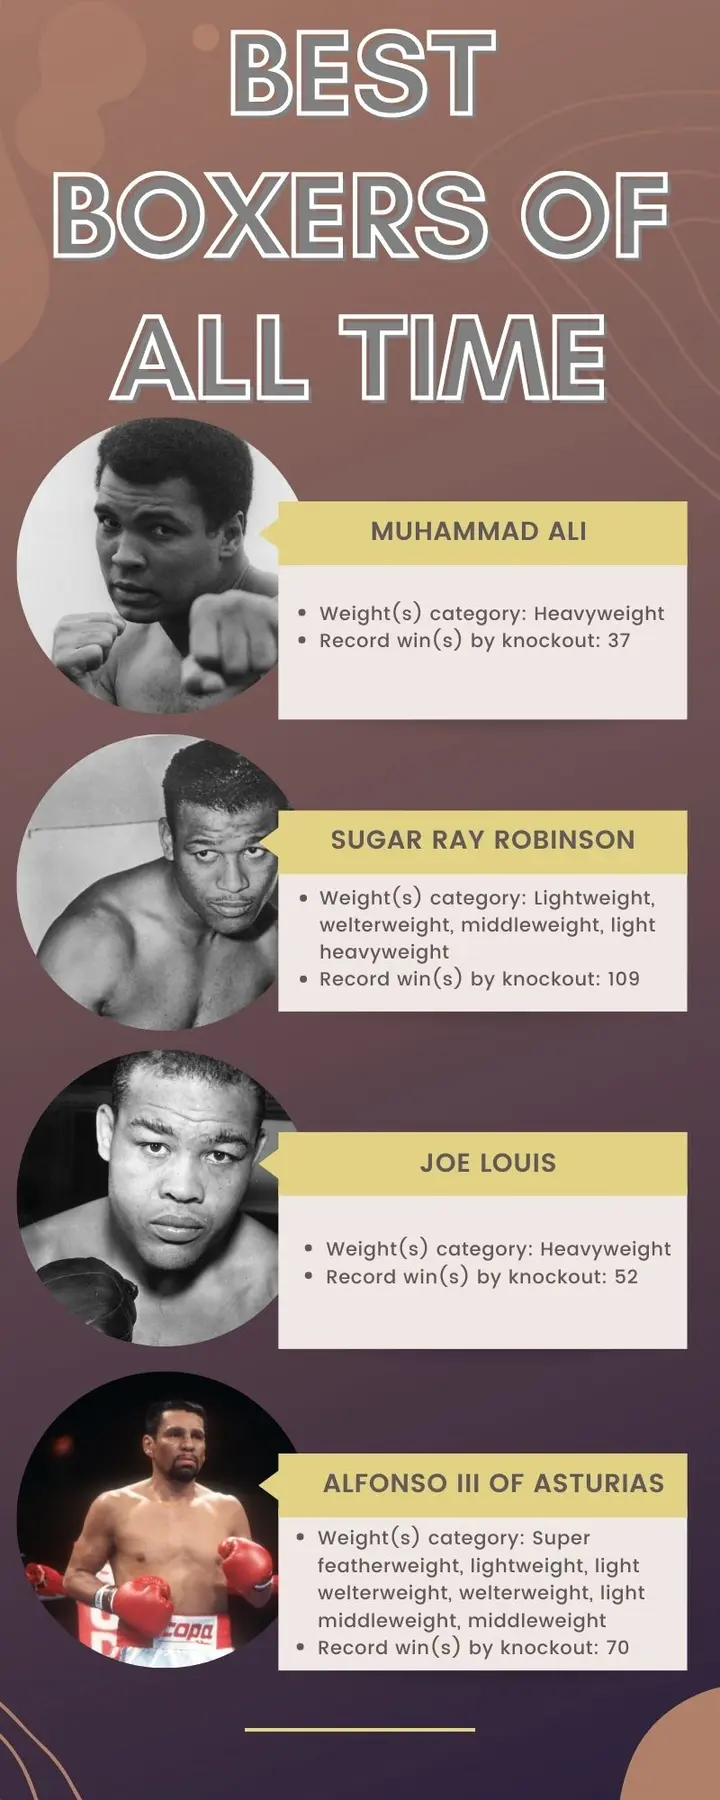 Best boxers